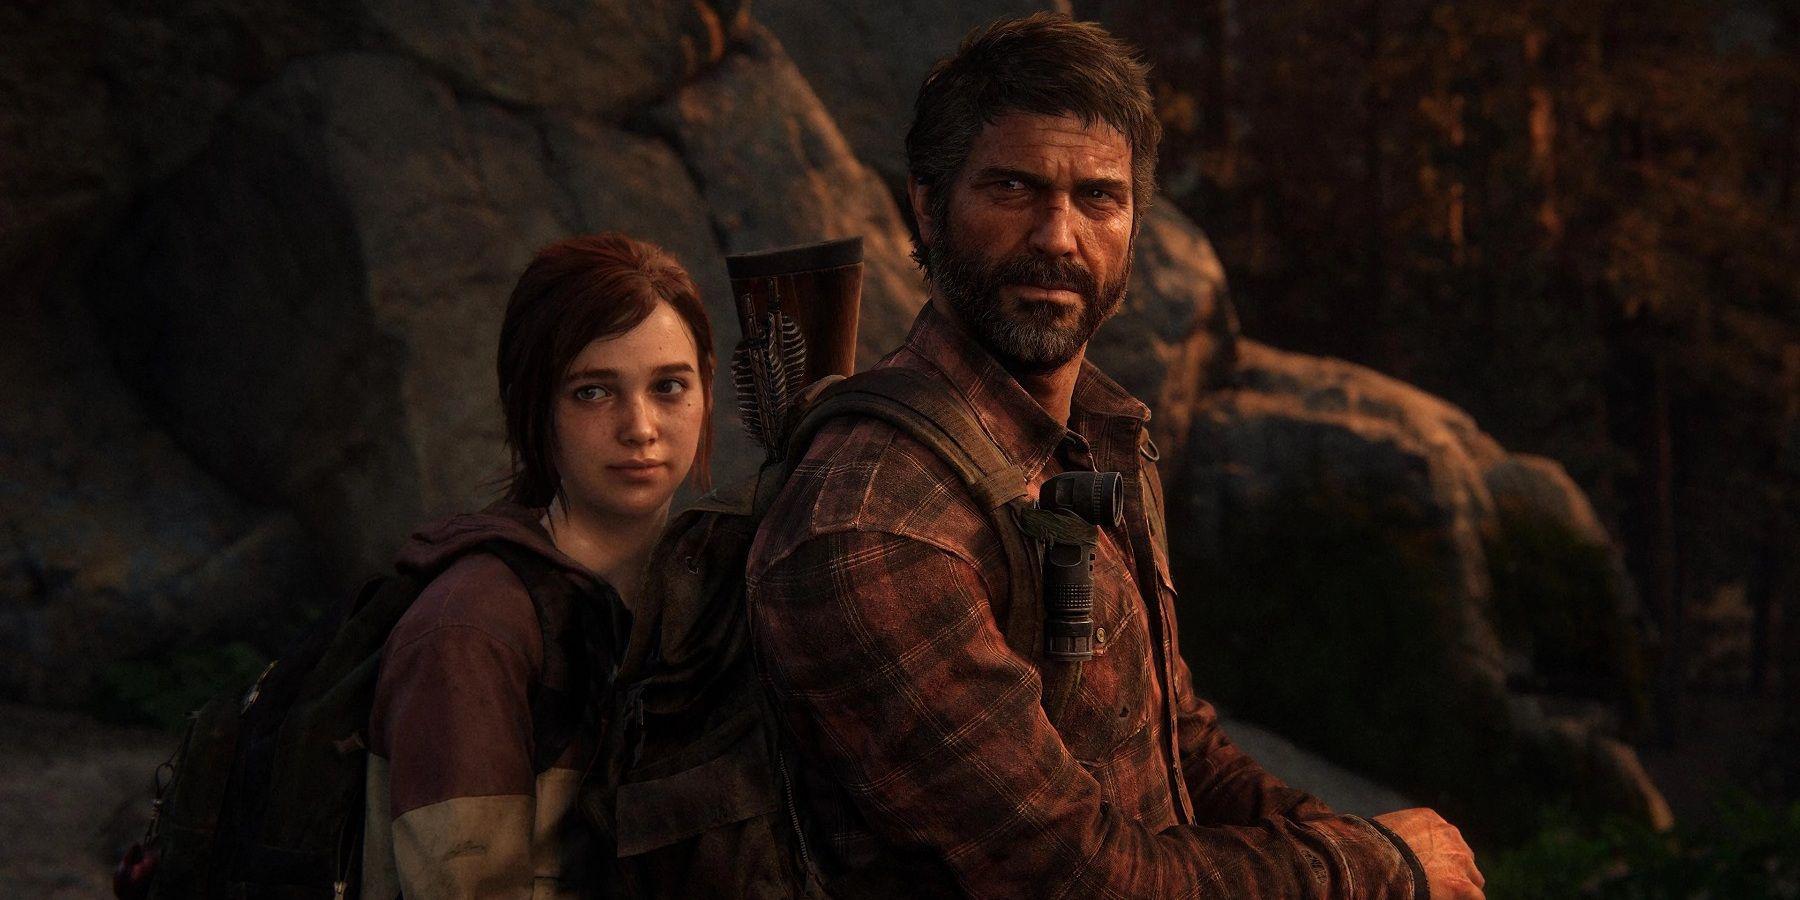 Os jogos The Last Of Us obtêm um grande aumento nas vendas após a estreia do programa de TV